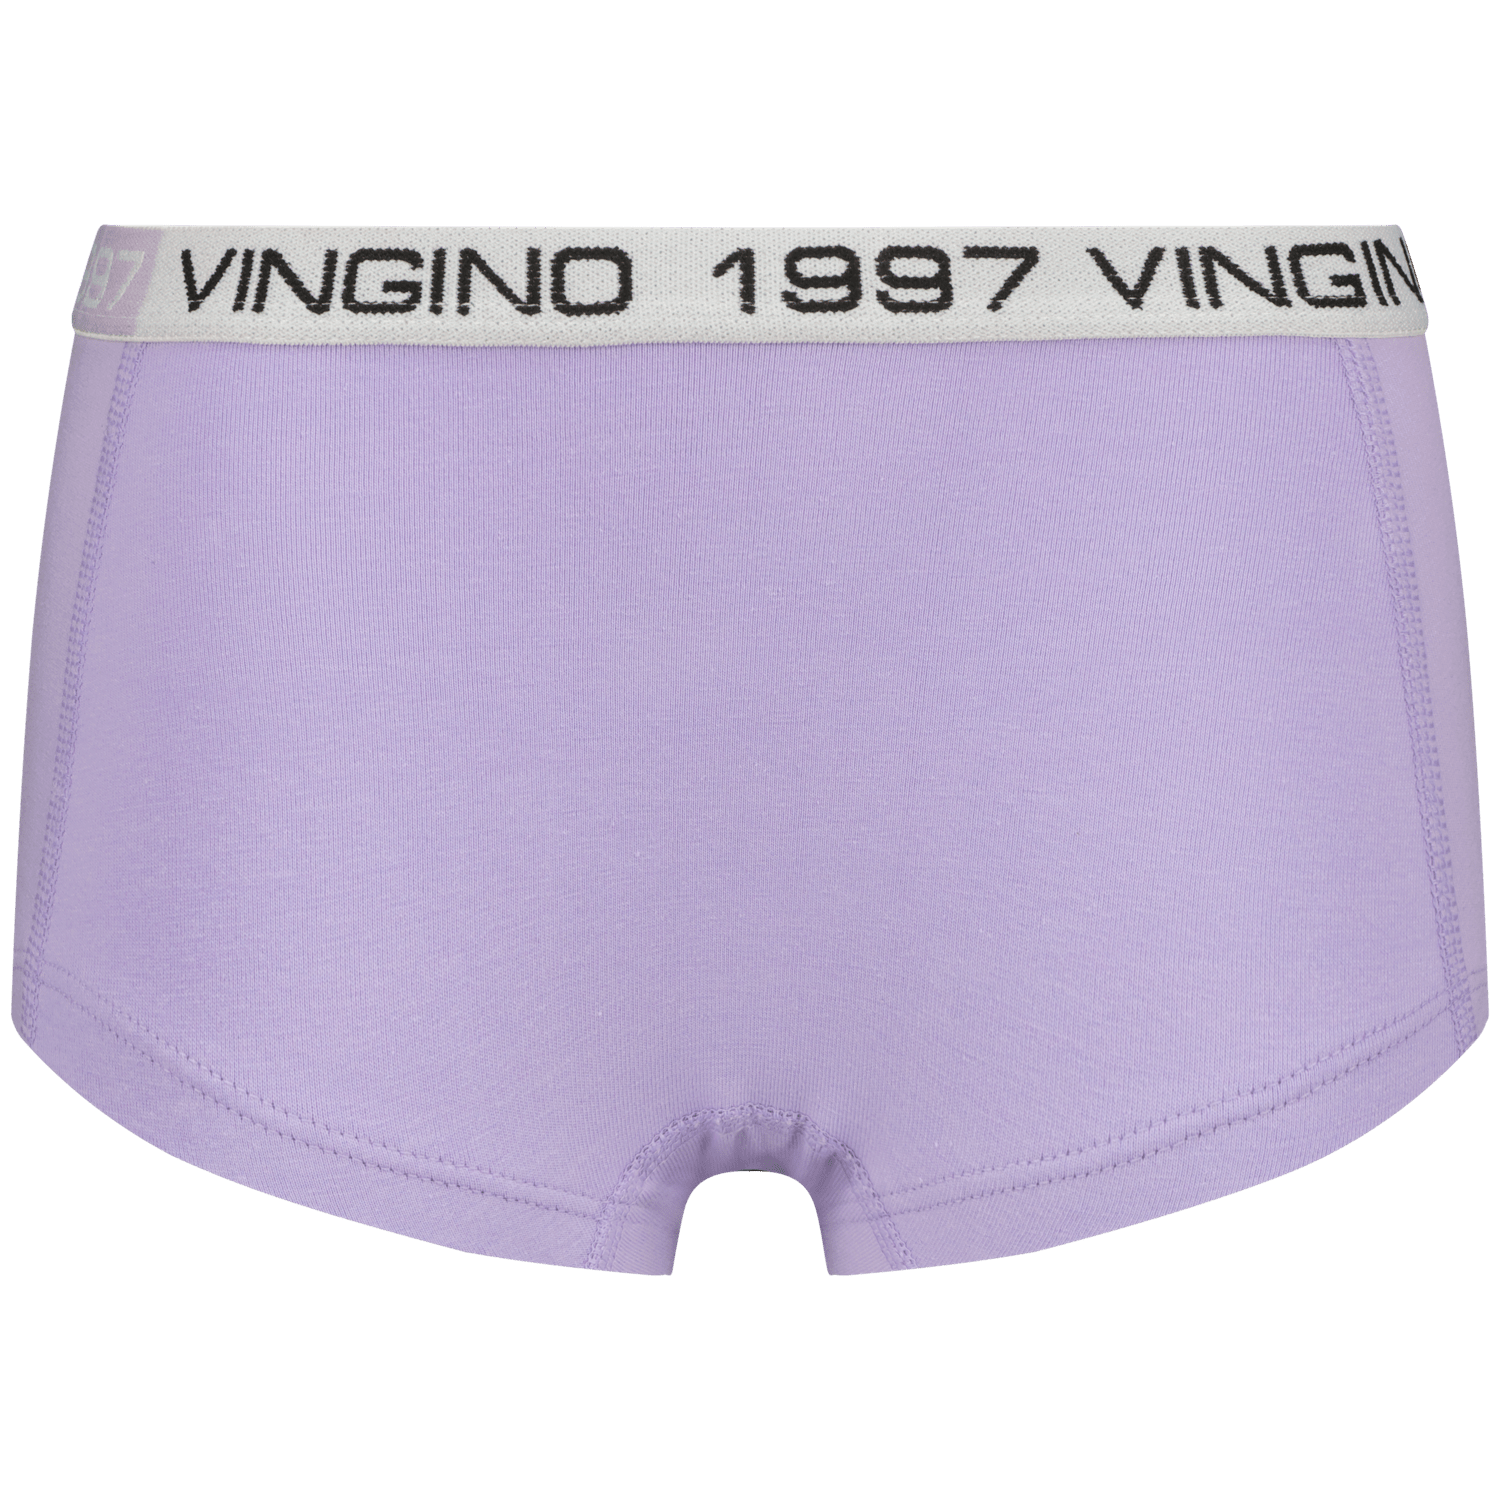 VINGINO Hipster G-so24-10 7 pack